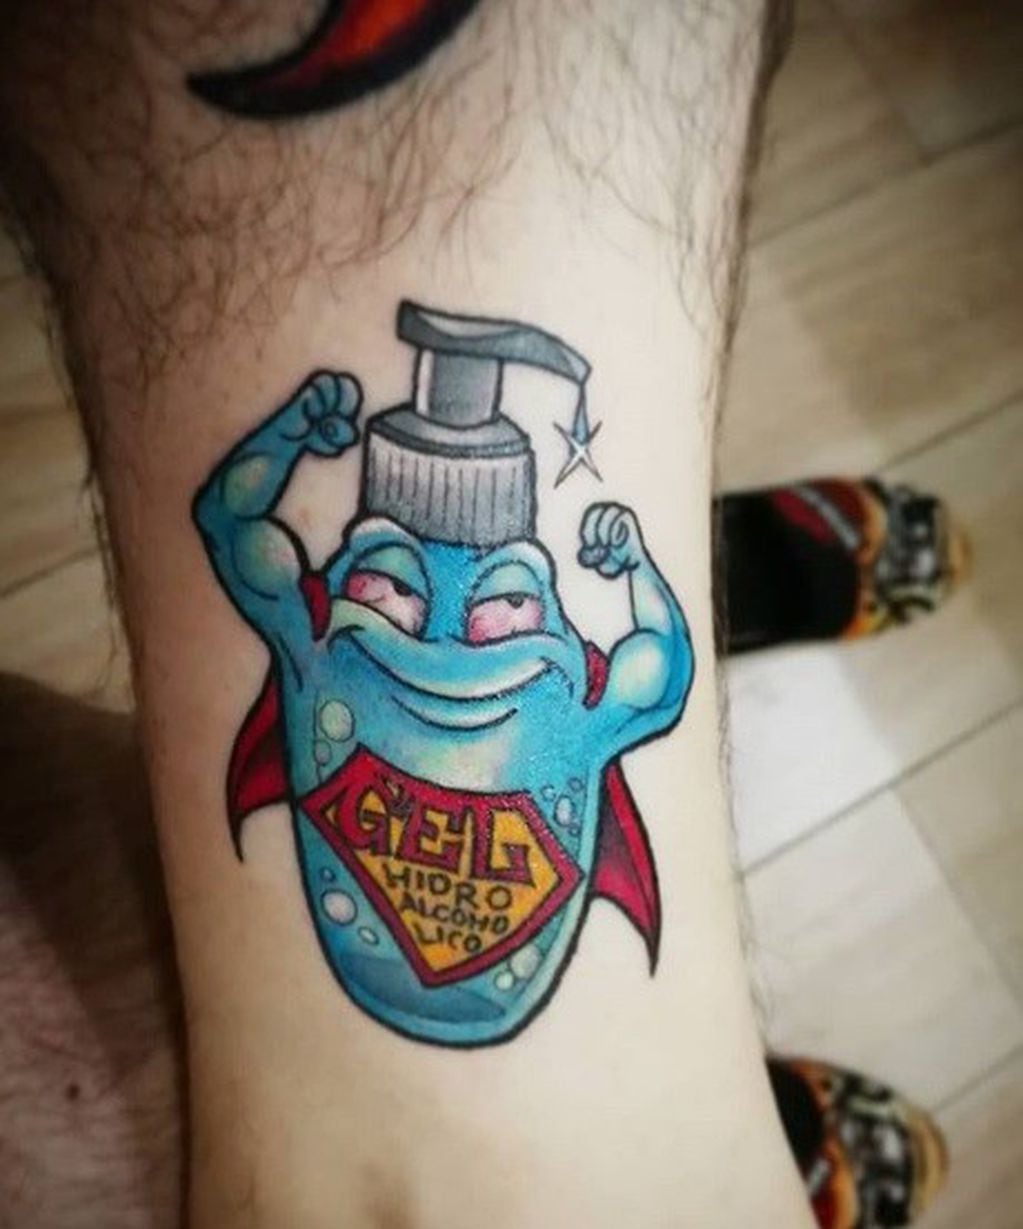 El diseño del tatuaje muestra a una botella de alcohol con forma de super héroe. (Instagram @sergioespintattoo)